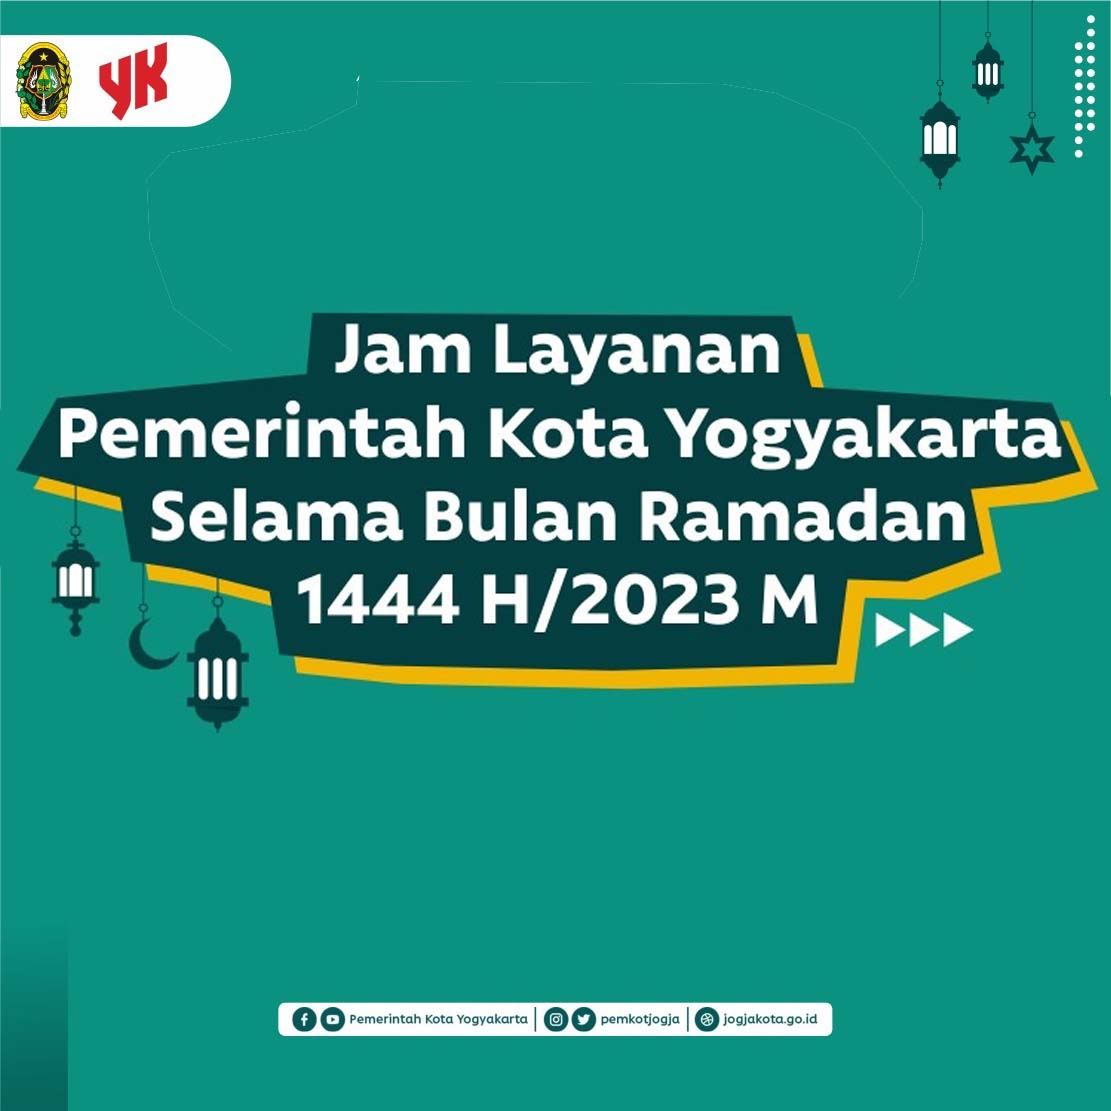 Jam Layanan Pemerintah Kota Yogyakarta selama Bulan Ramadan 1444 H